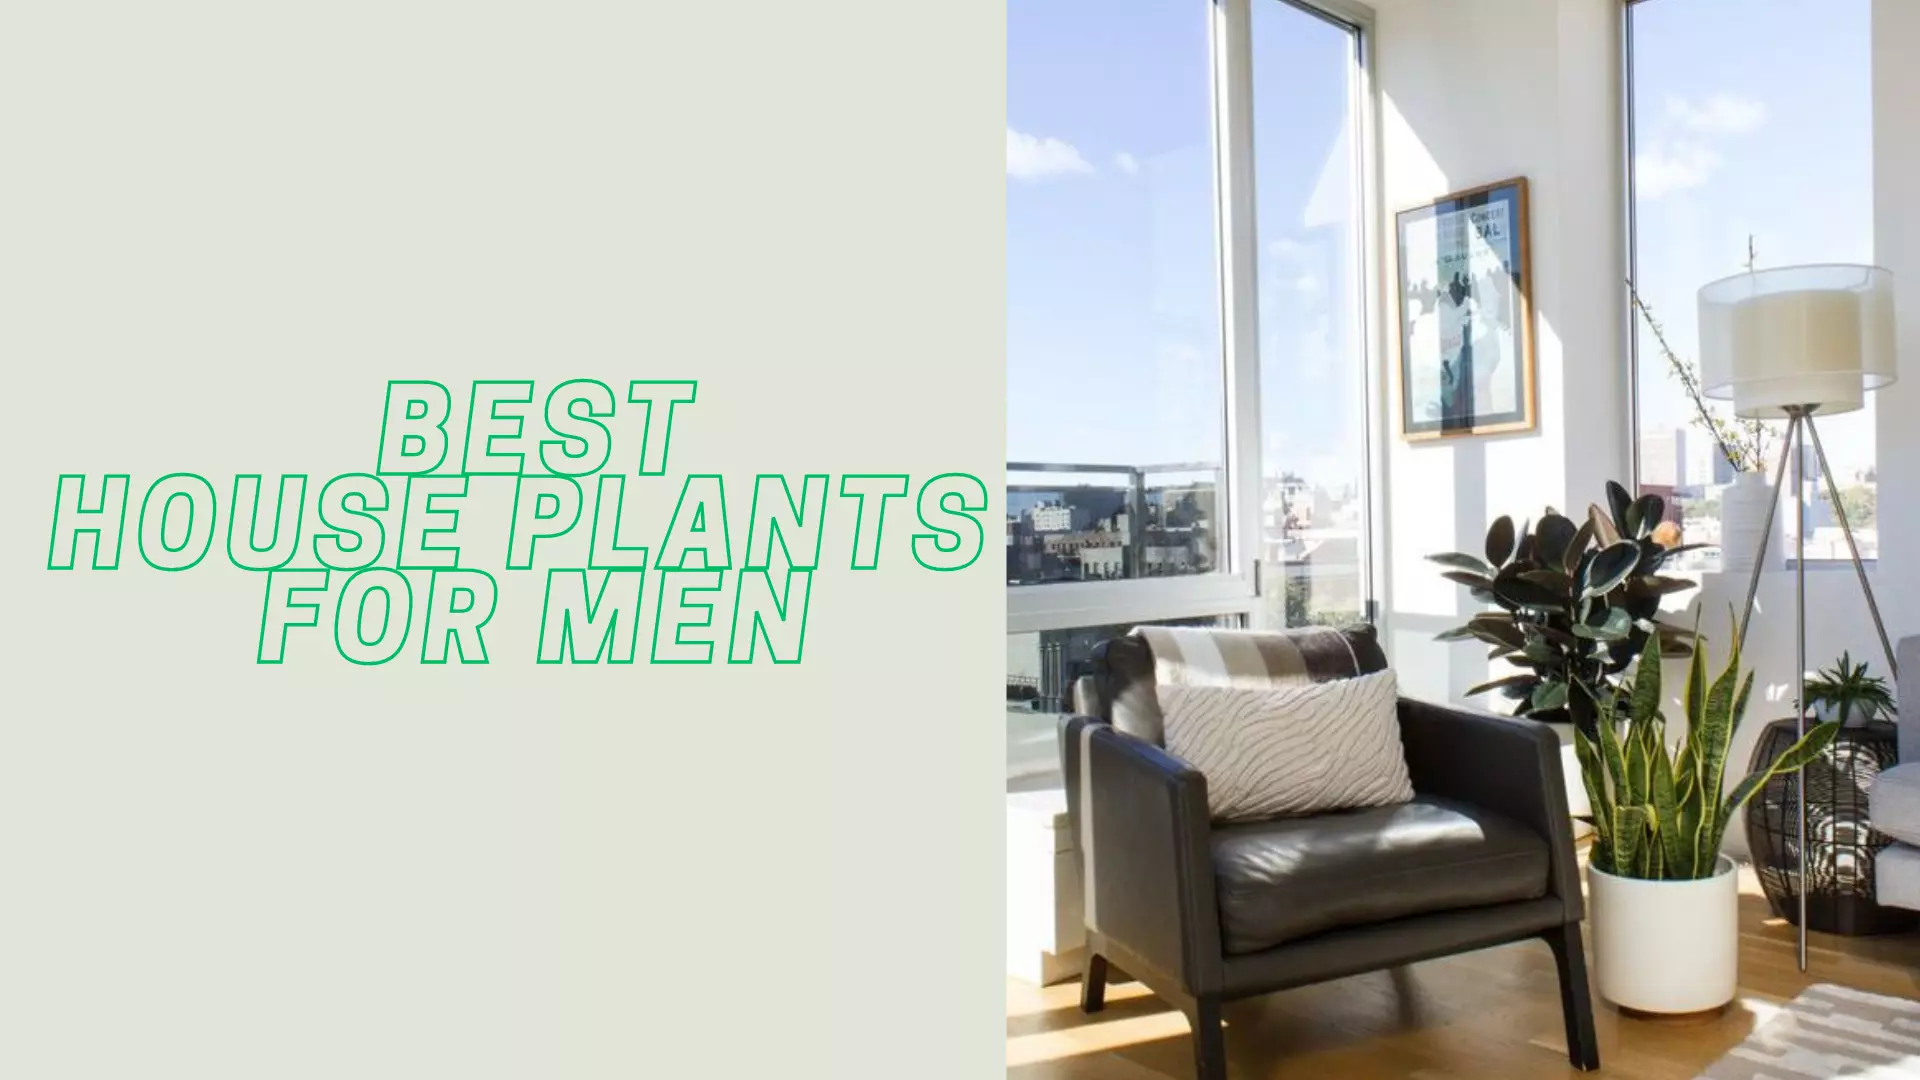 plants for men